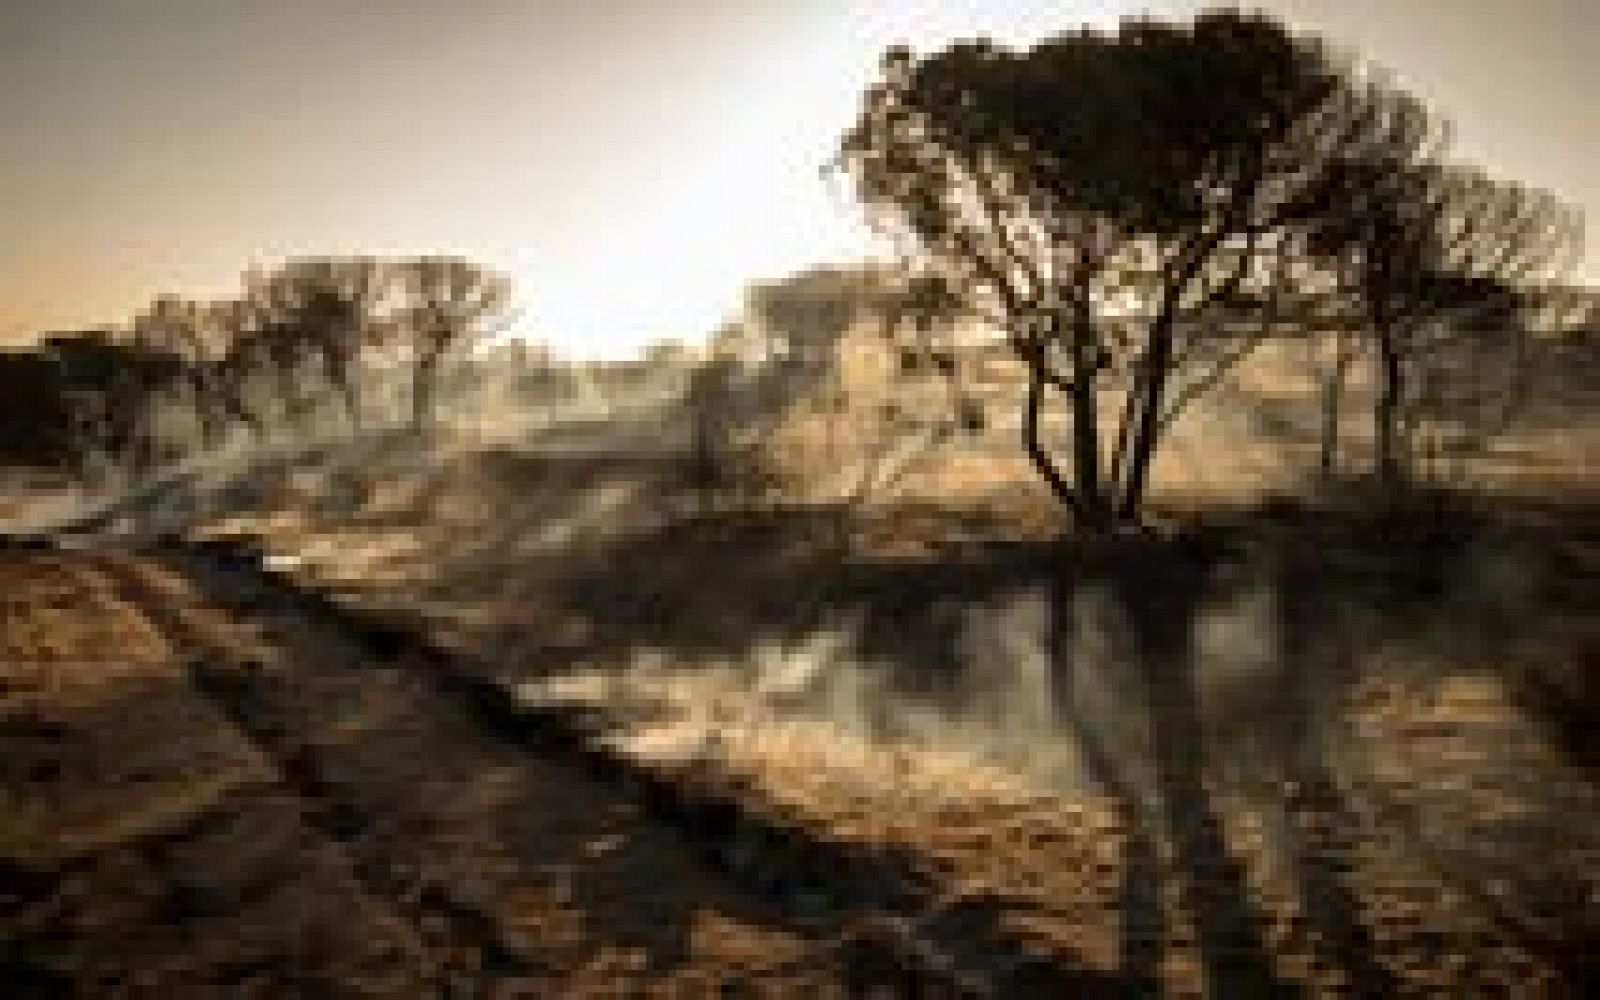 El fuego en el entorno de Doñana ha afectado a 8.486 hectáreas de matorrales y arbolado